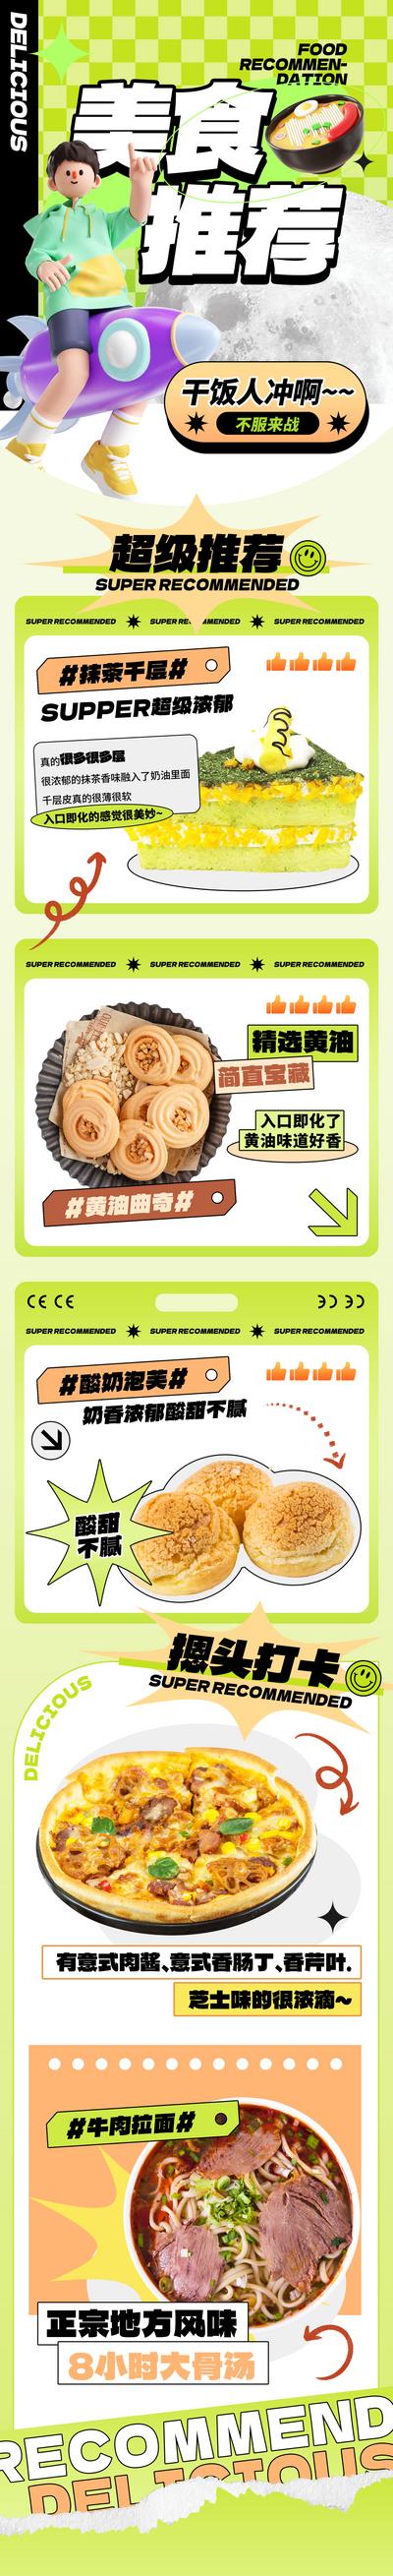 【南门网】广告 海报 商场 美食 专题 长图 推文 蛋糕 糕点